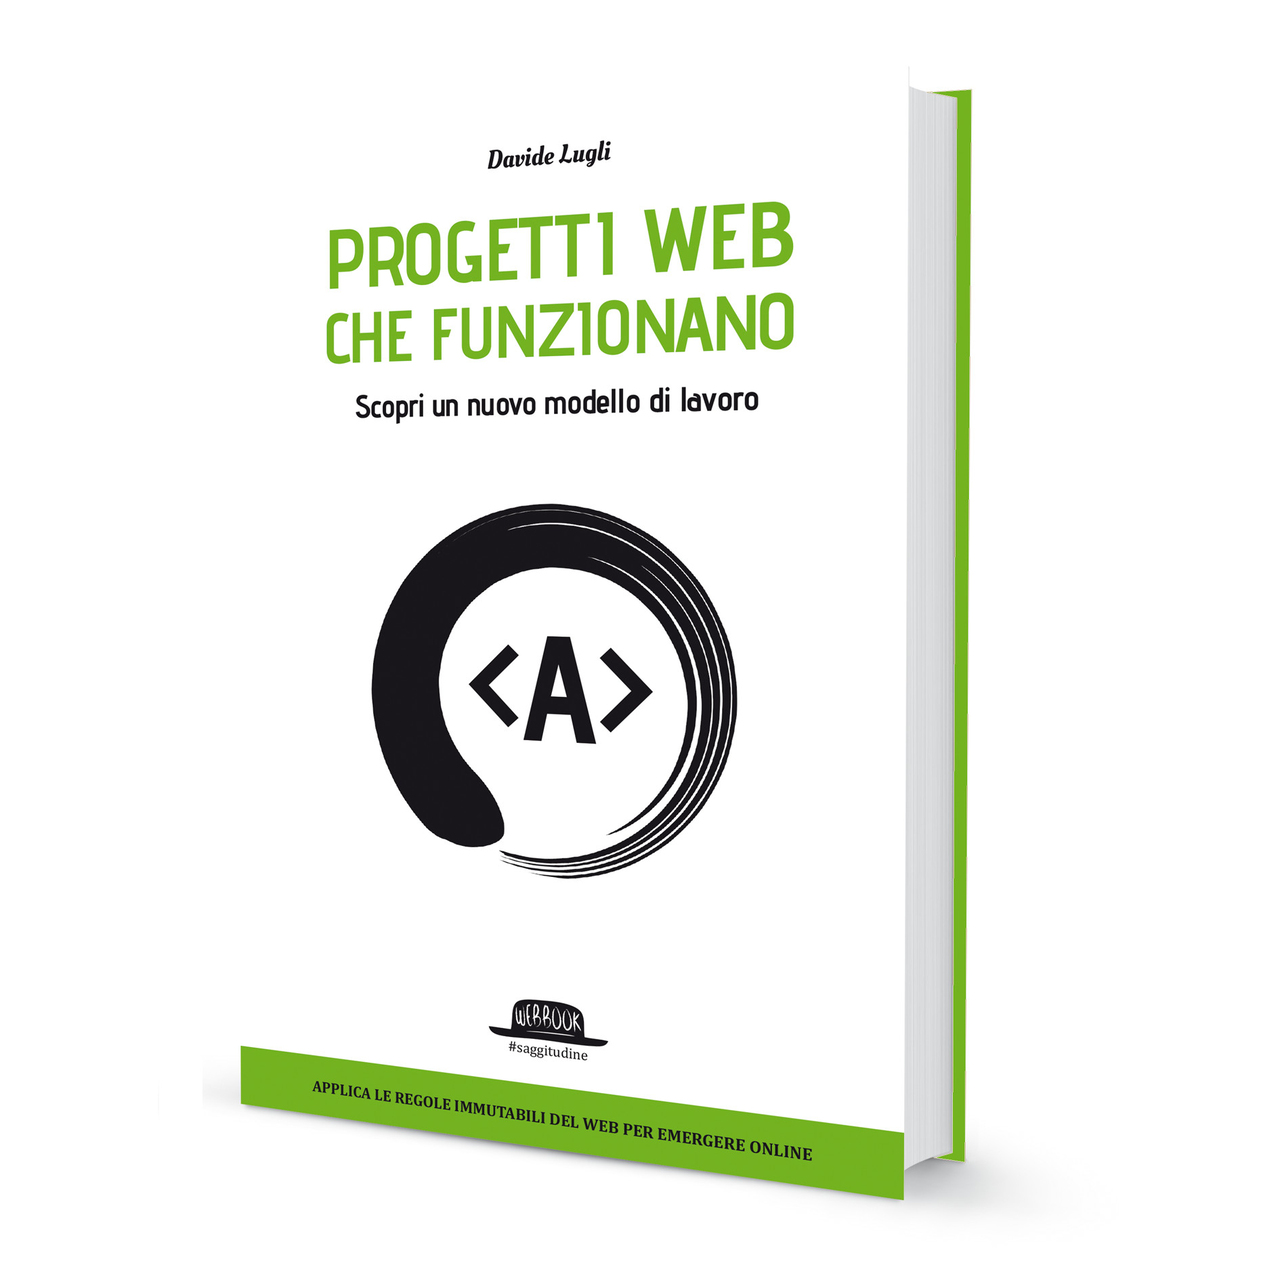 Davide Lugli: nel 2018 Davide Lugli è stato l’autore del libro "Progetti Web che funzionano", pubblicato dalla Dario Flaccovio Editore di Palermo